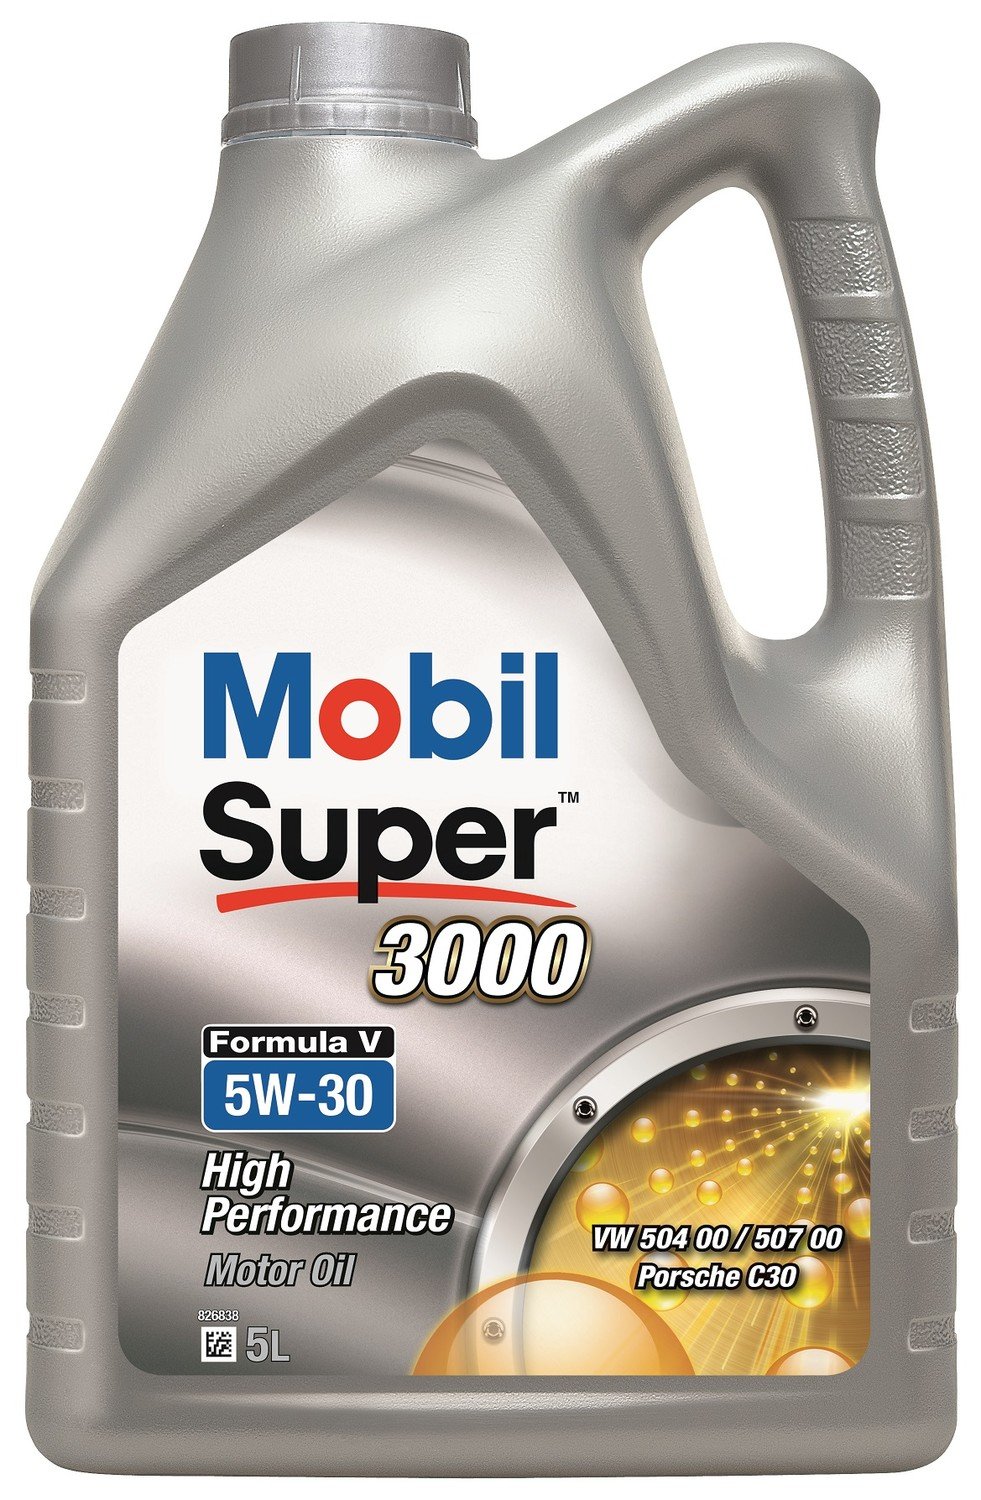 Mobil Super 3000 Formula V 5W-30 5L